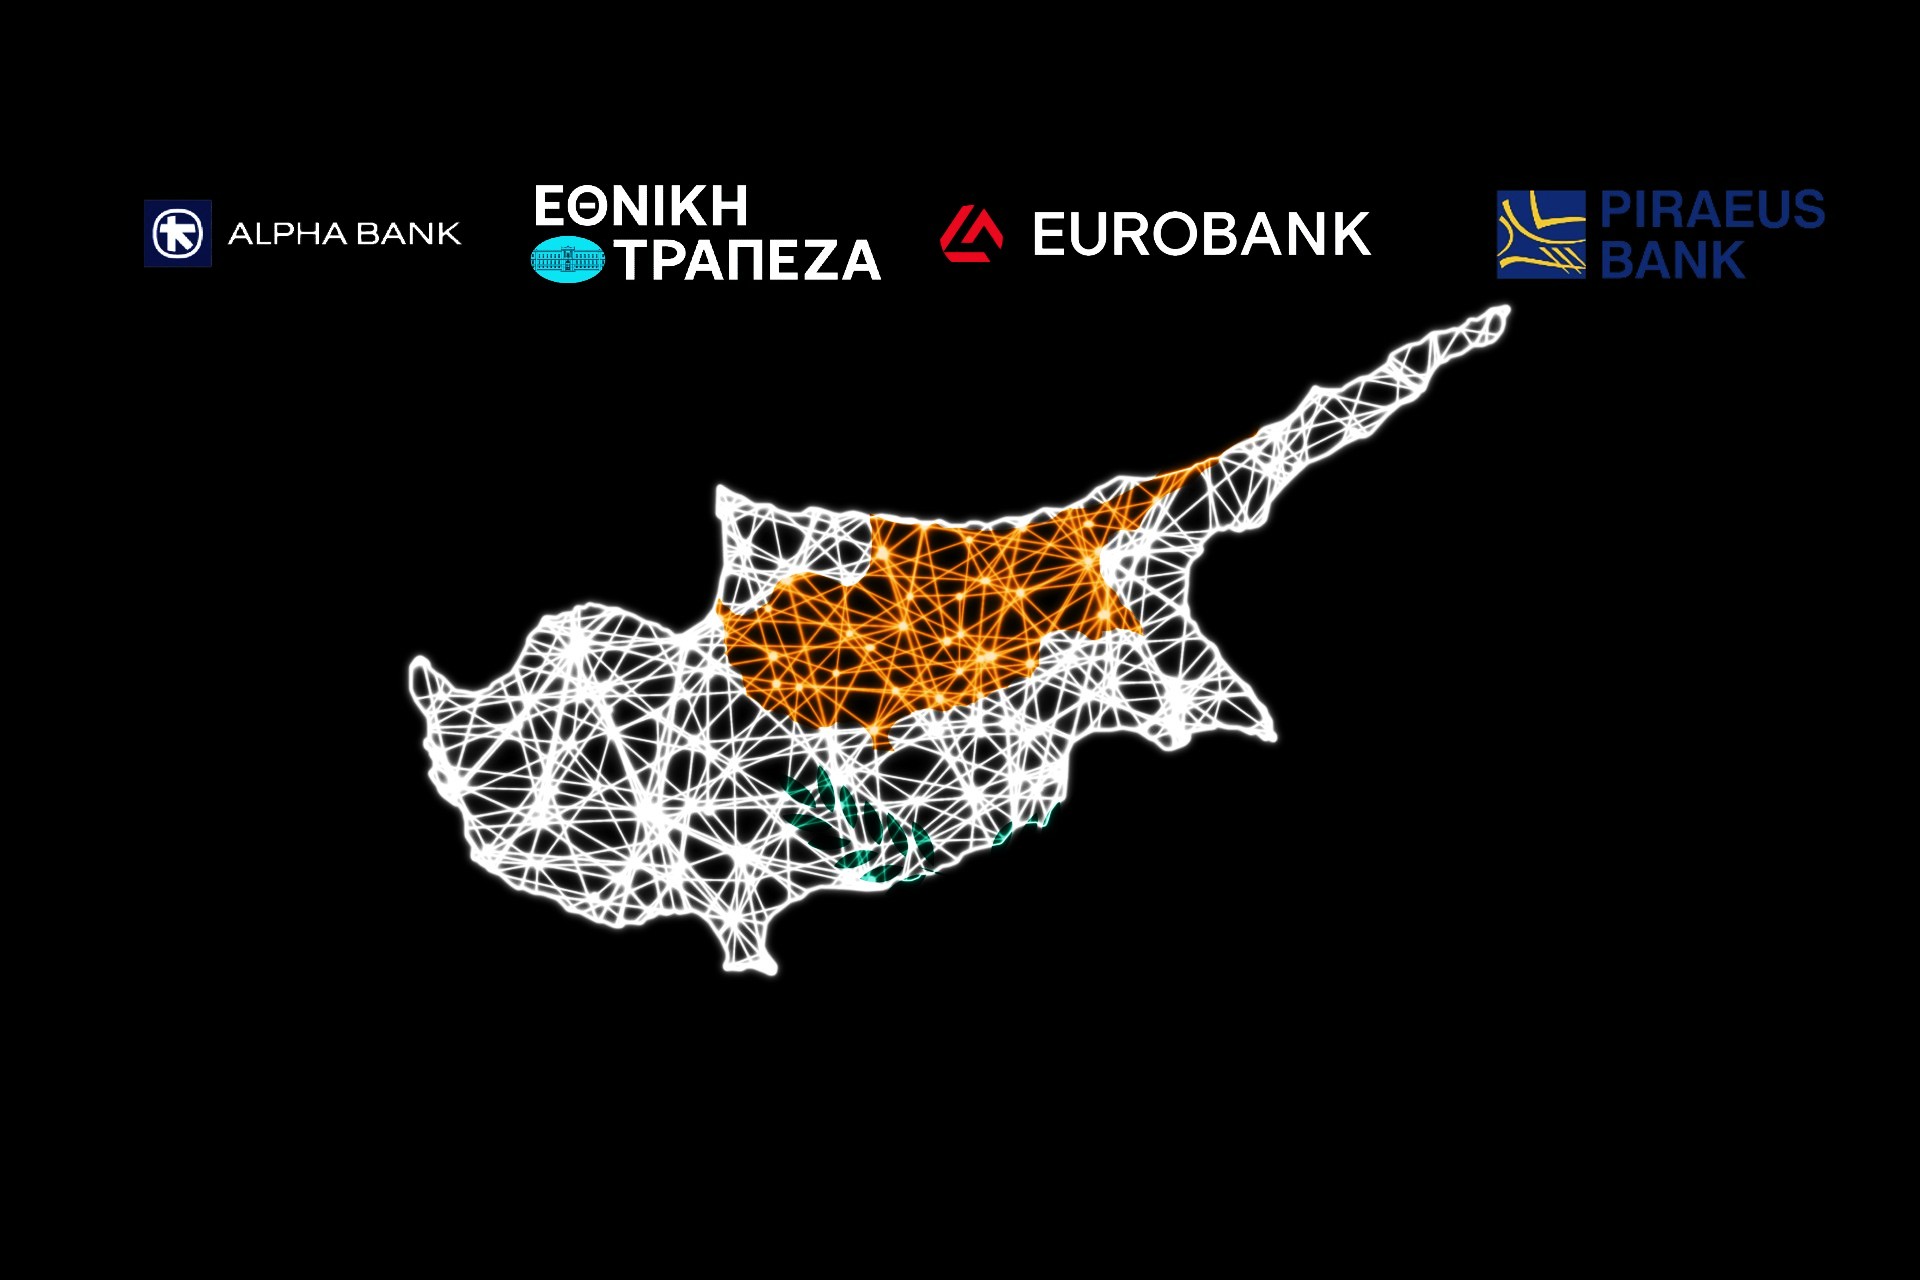 Ελληνικές Τράπεζες: Καλά κρατεί ο «καπνός» από το τραπεζικό σύστημα της Κύπρου - Θερμό καλοκαίρι εξακολουθούν να περιμένουν οι αναλυτές με αιχμή την Τράπεζα Κύπρου - Δυνητικοί ενδιαφερόμενοι και οι τρεις ελληνικοί όμιλοι – Τα πλεονεκτήματα και τα αγκάθια – Πρωταγωνιστικός ο ρόλος της Eurobank!